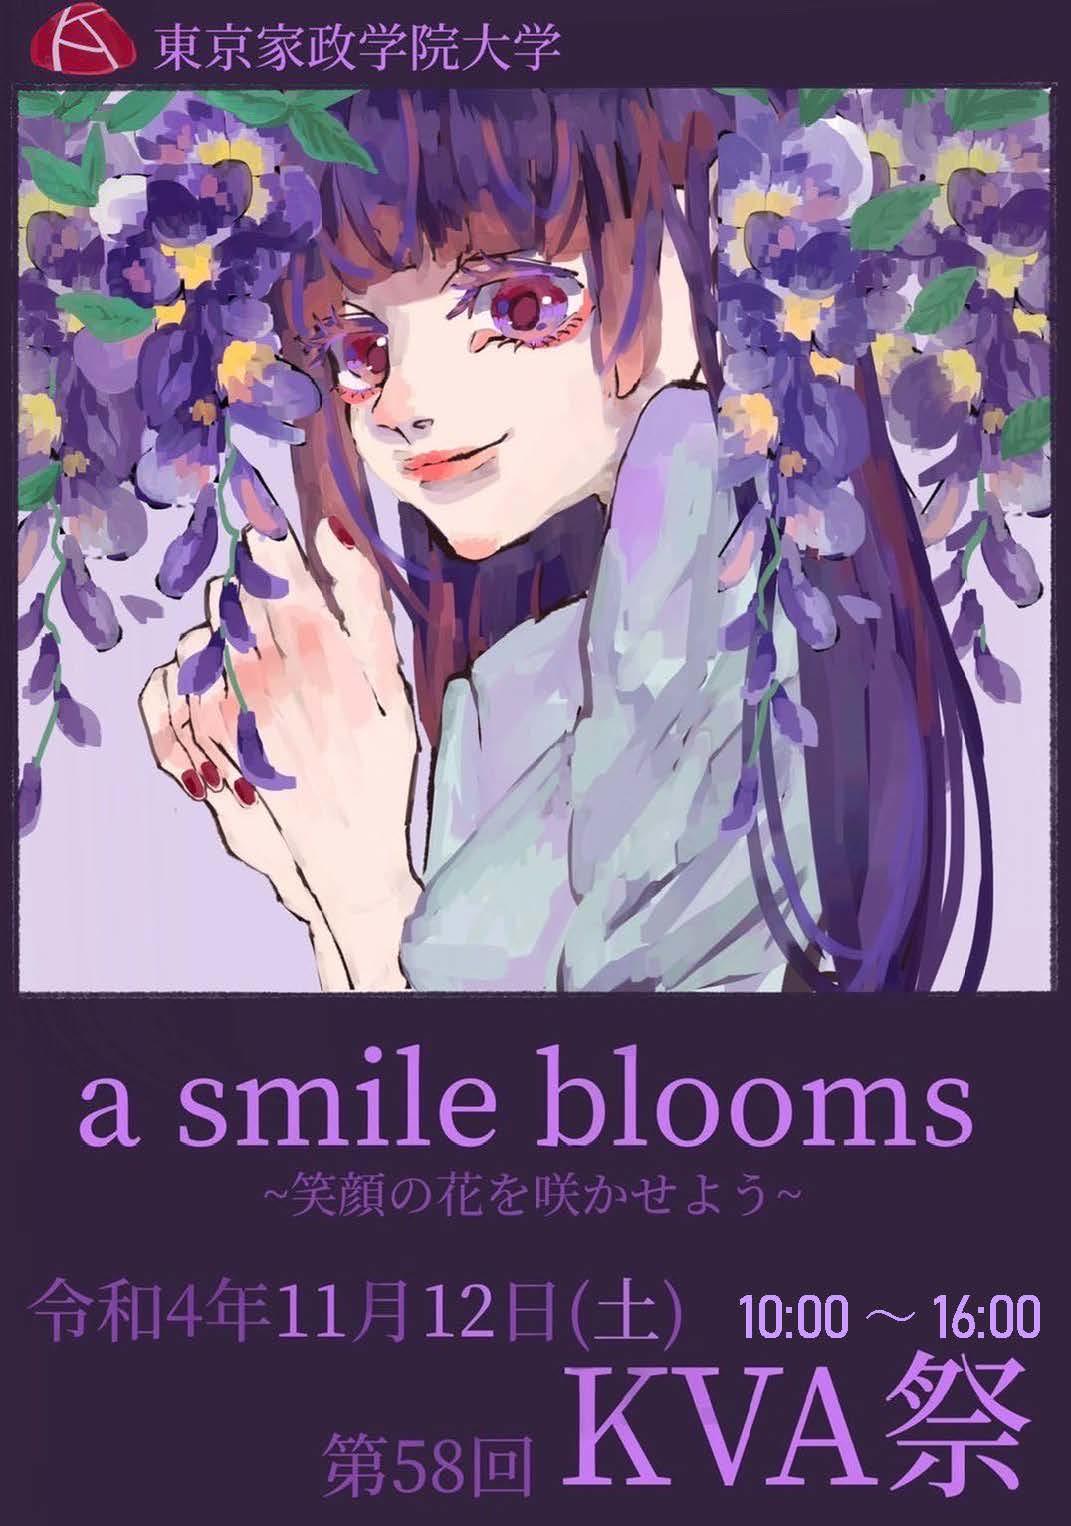 東京家政学院大学　大学祭「KVA祭 a smile blooms～笑顔の花を咲かせよう～」を開催